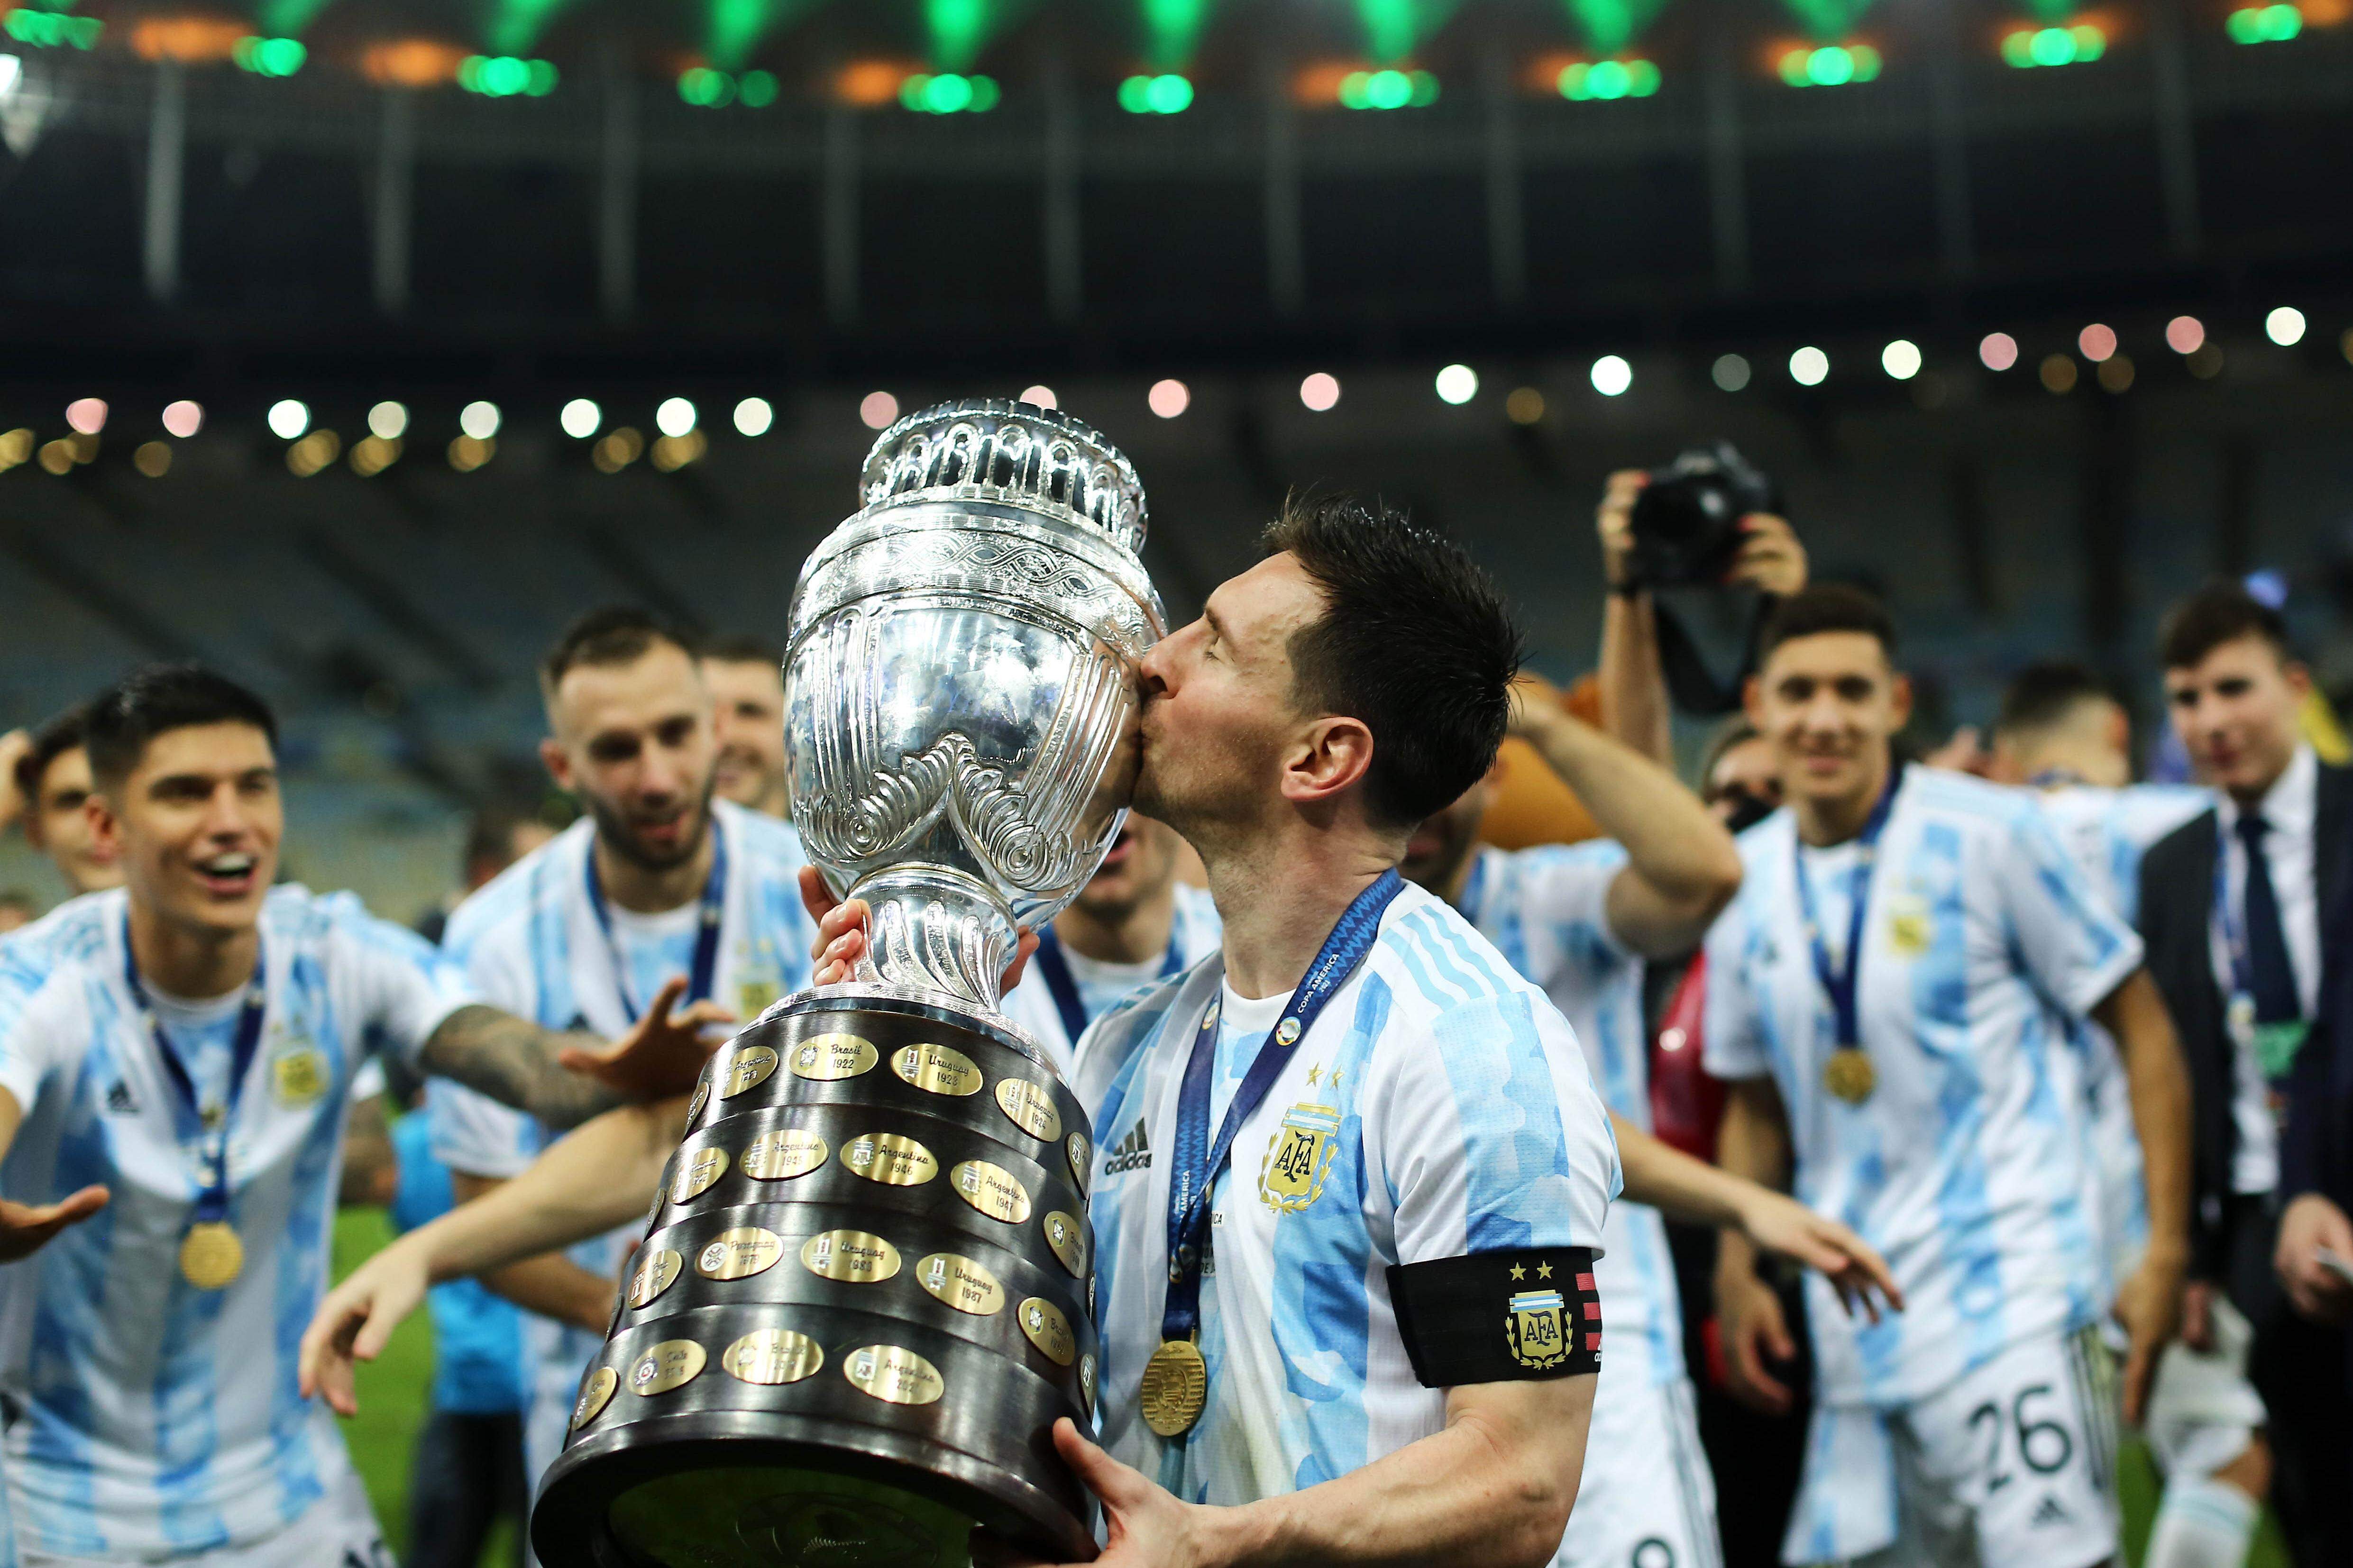 Revista elege Messi como o melhor da história e põe Pelé em quarto no  ranking, futebol internacional